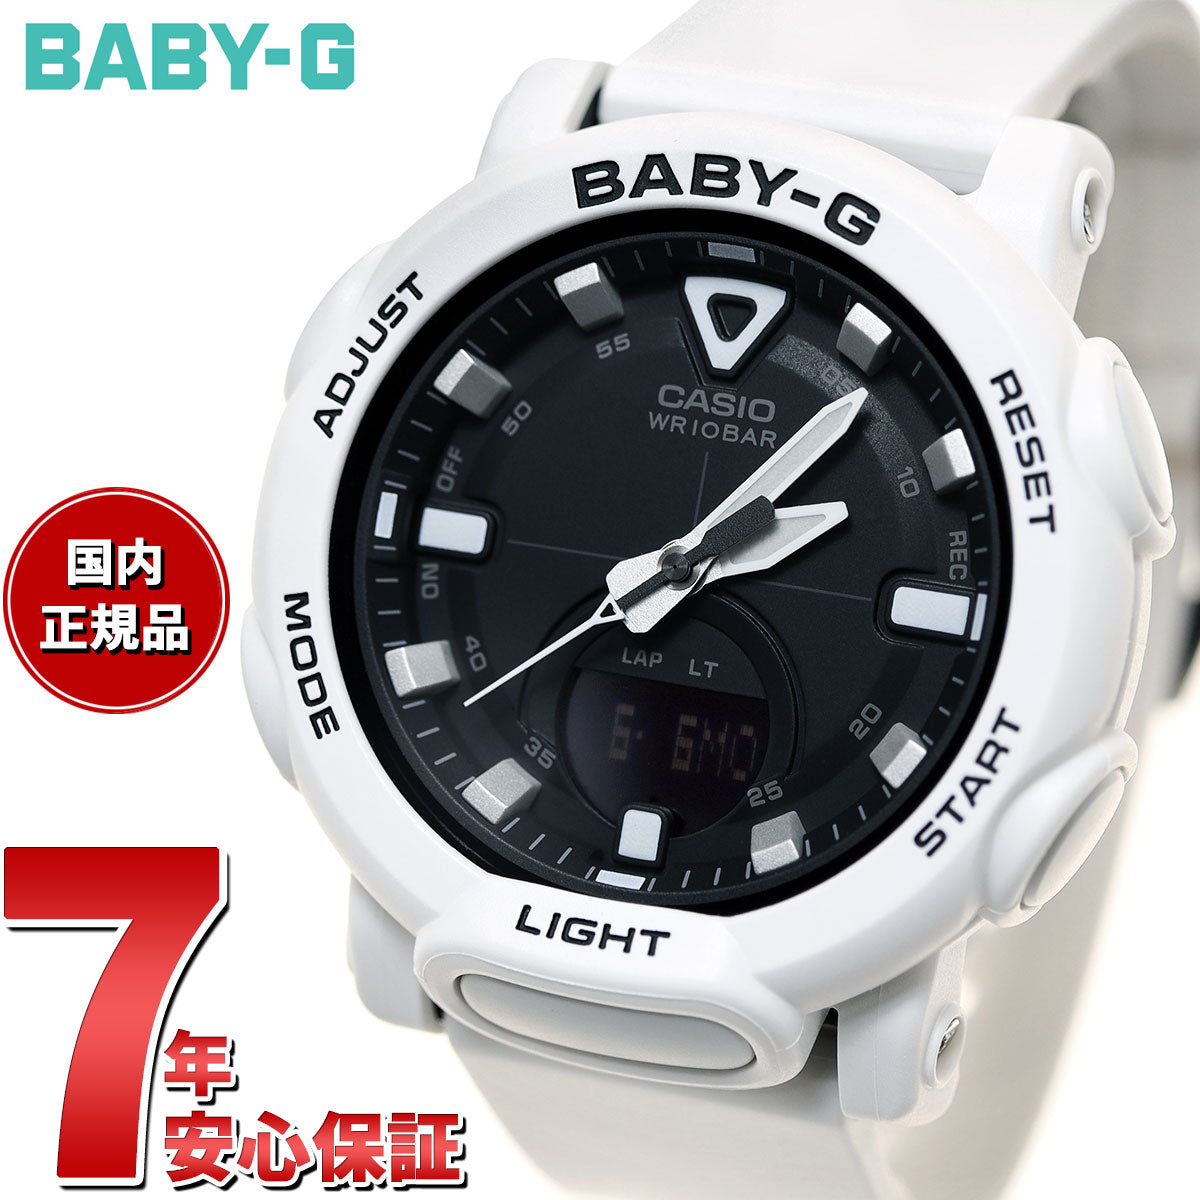 BABY-G カシオ ベビーG レディース 腕時計 BGA-310-7A2JF